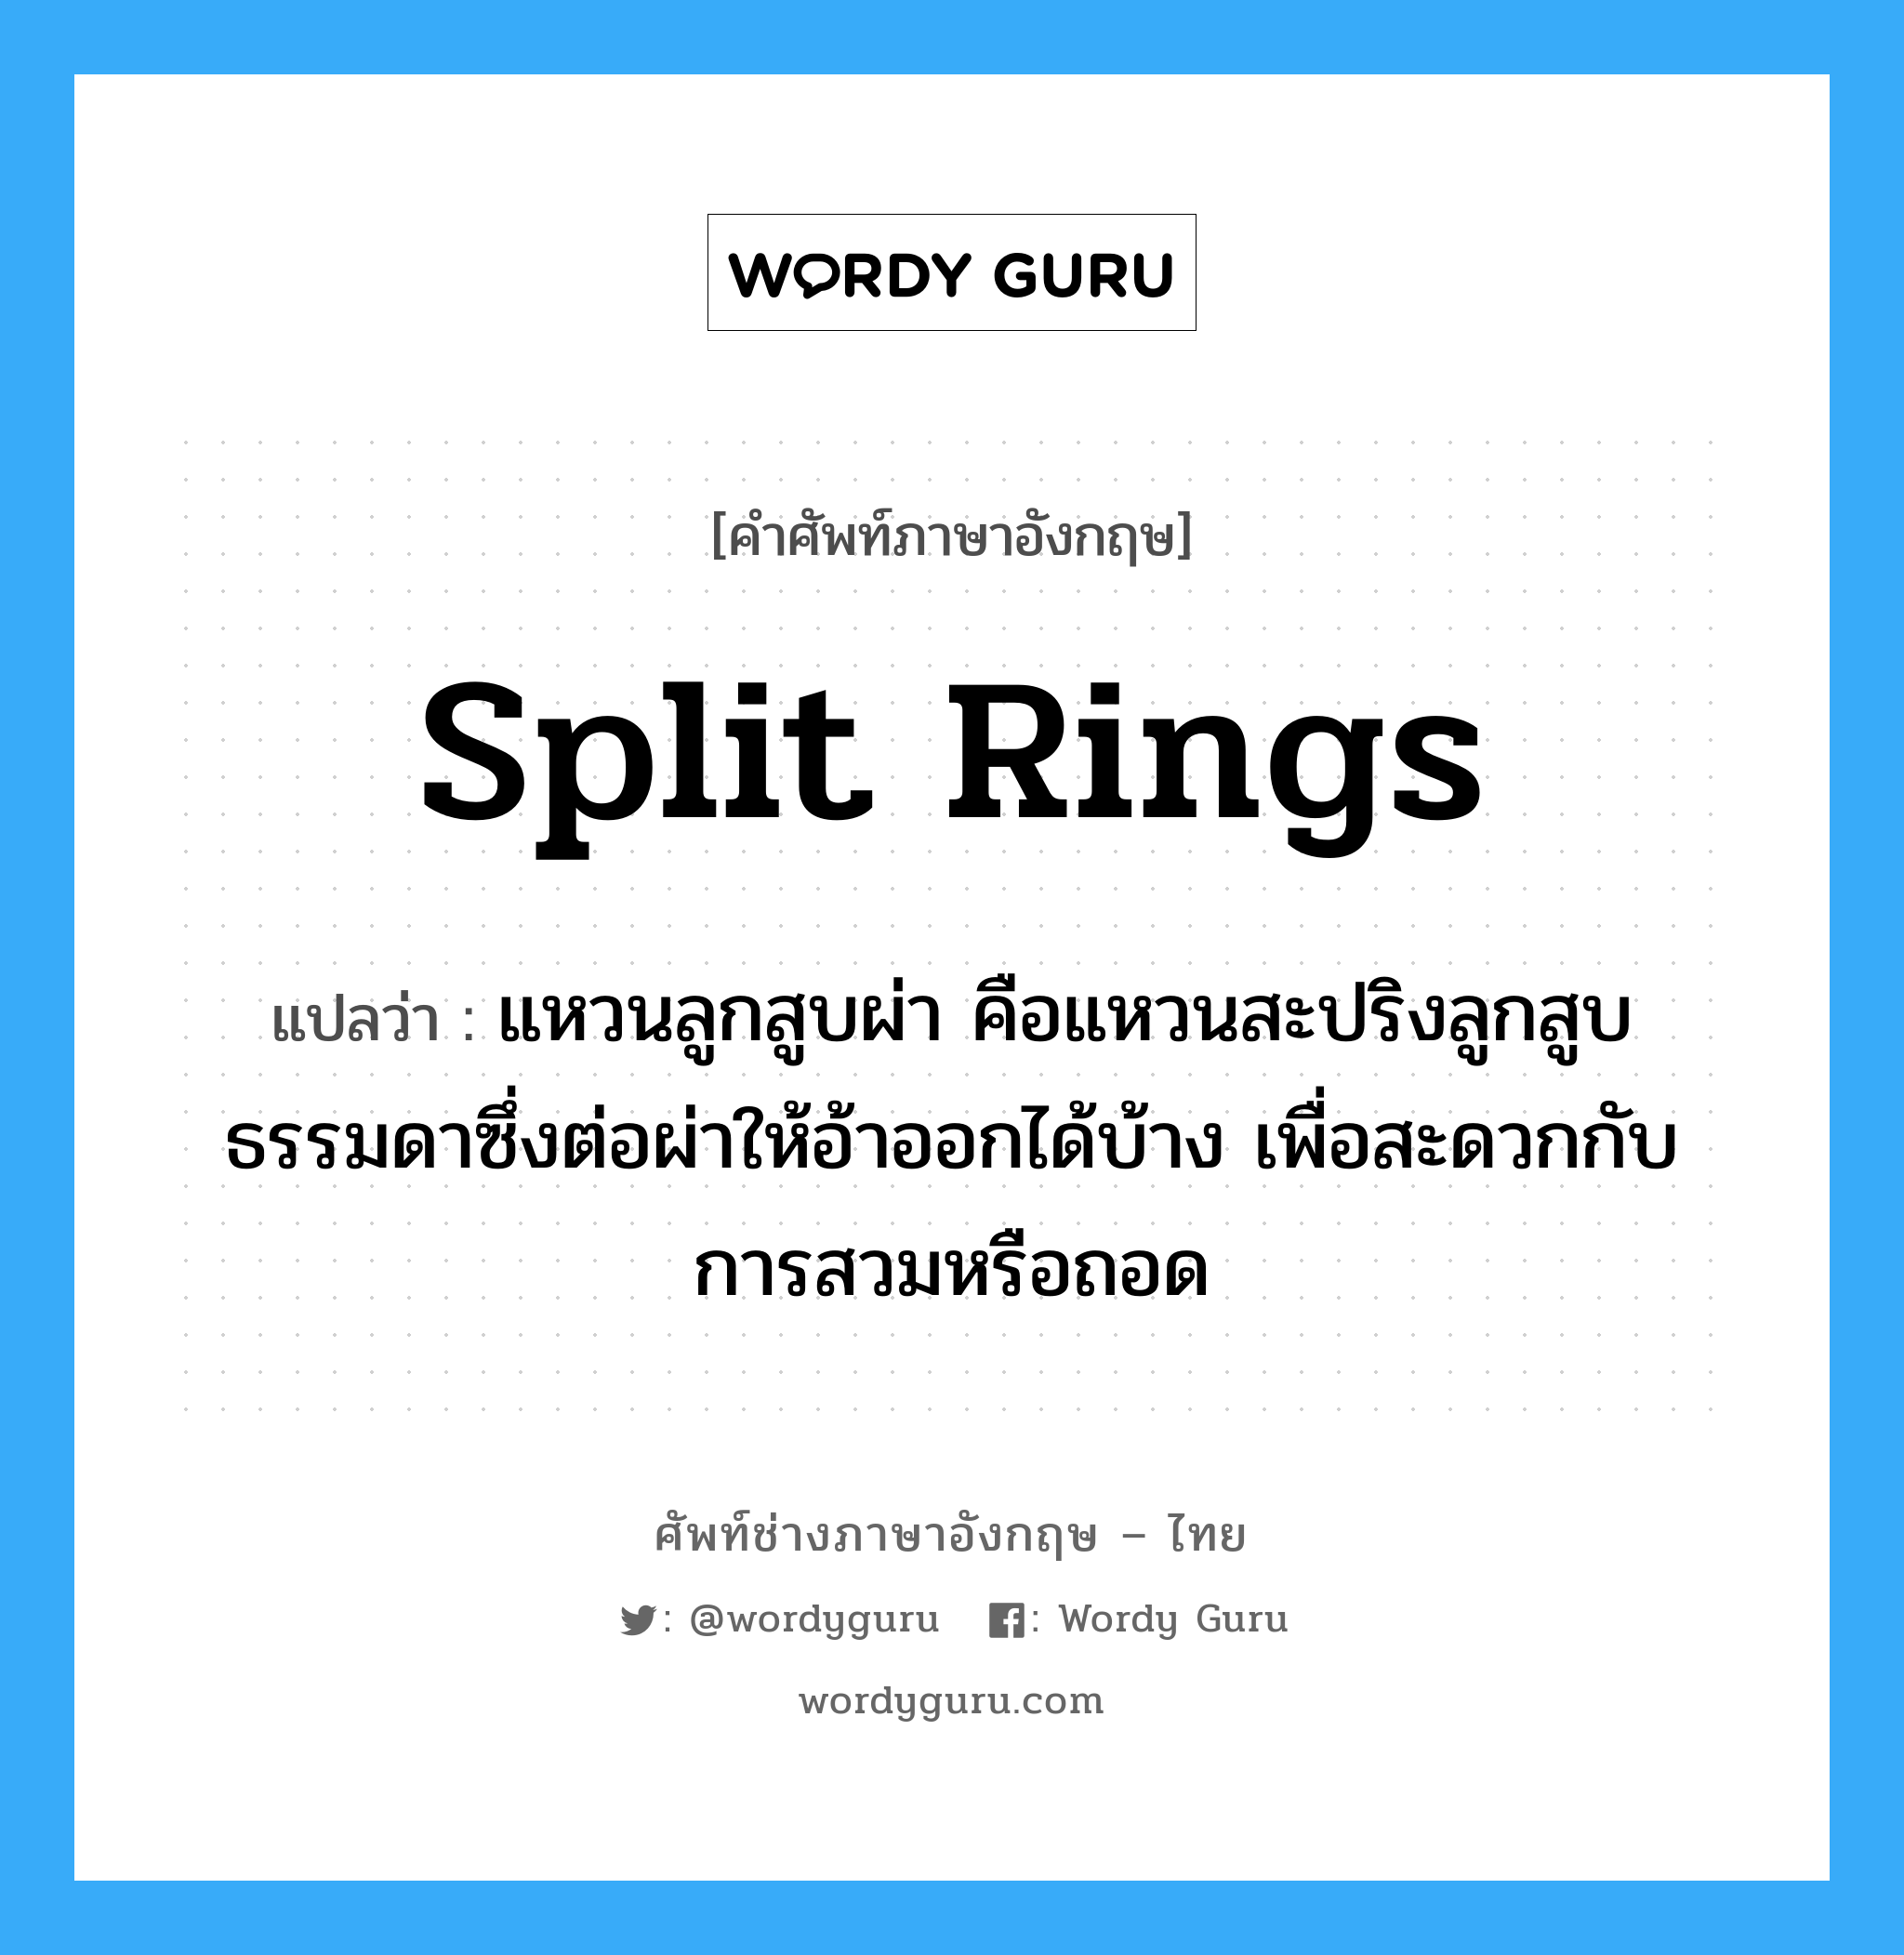 split rings แปลว่า?, คำศัพท์ช่างภาษาอังกฤษ - ไทย split rings คำศัพท์ภาษาอังกฤษ split rings แปลว่า แหวนลูกสูบผ่า คือแหวนสะปริงลูกสูบธรรมดาซึ่งต่อผ่าให้อ้าออกได้บ้าง เพื่อสะดวกกับการสวมหรือถอด